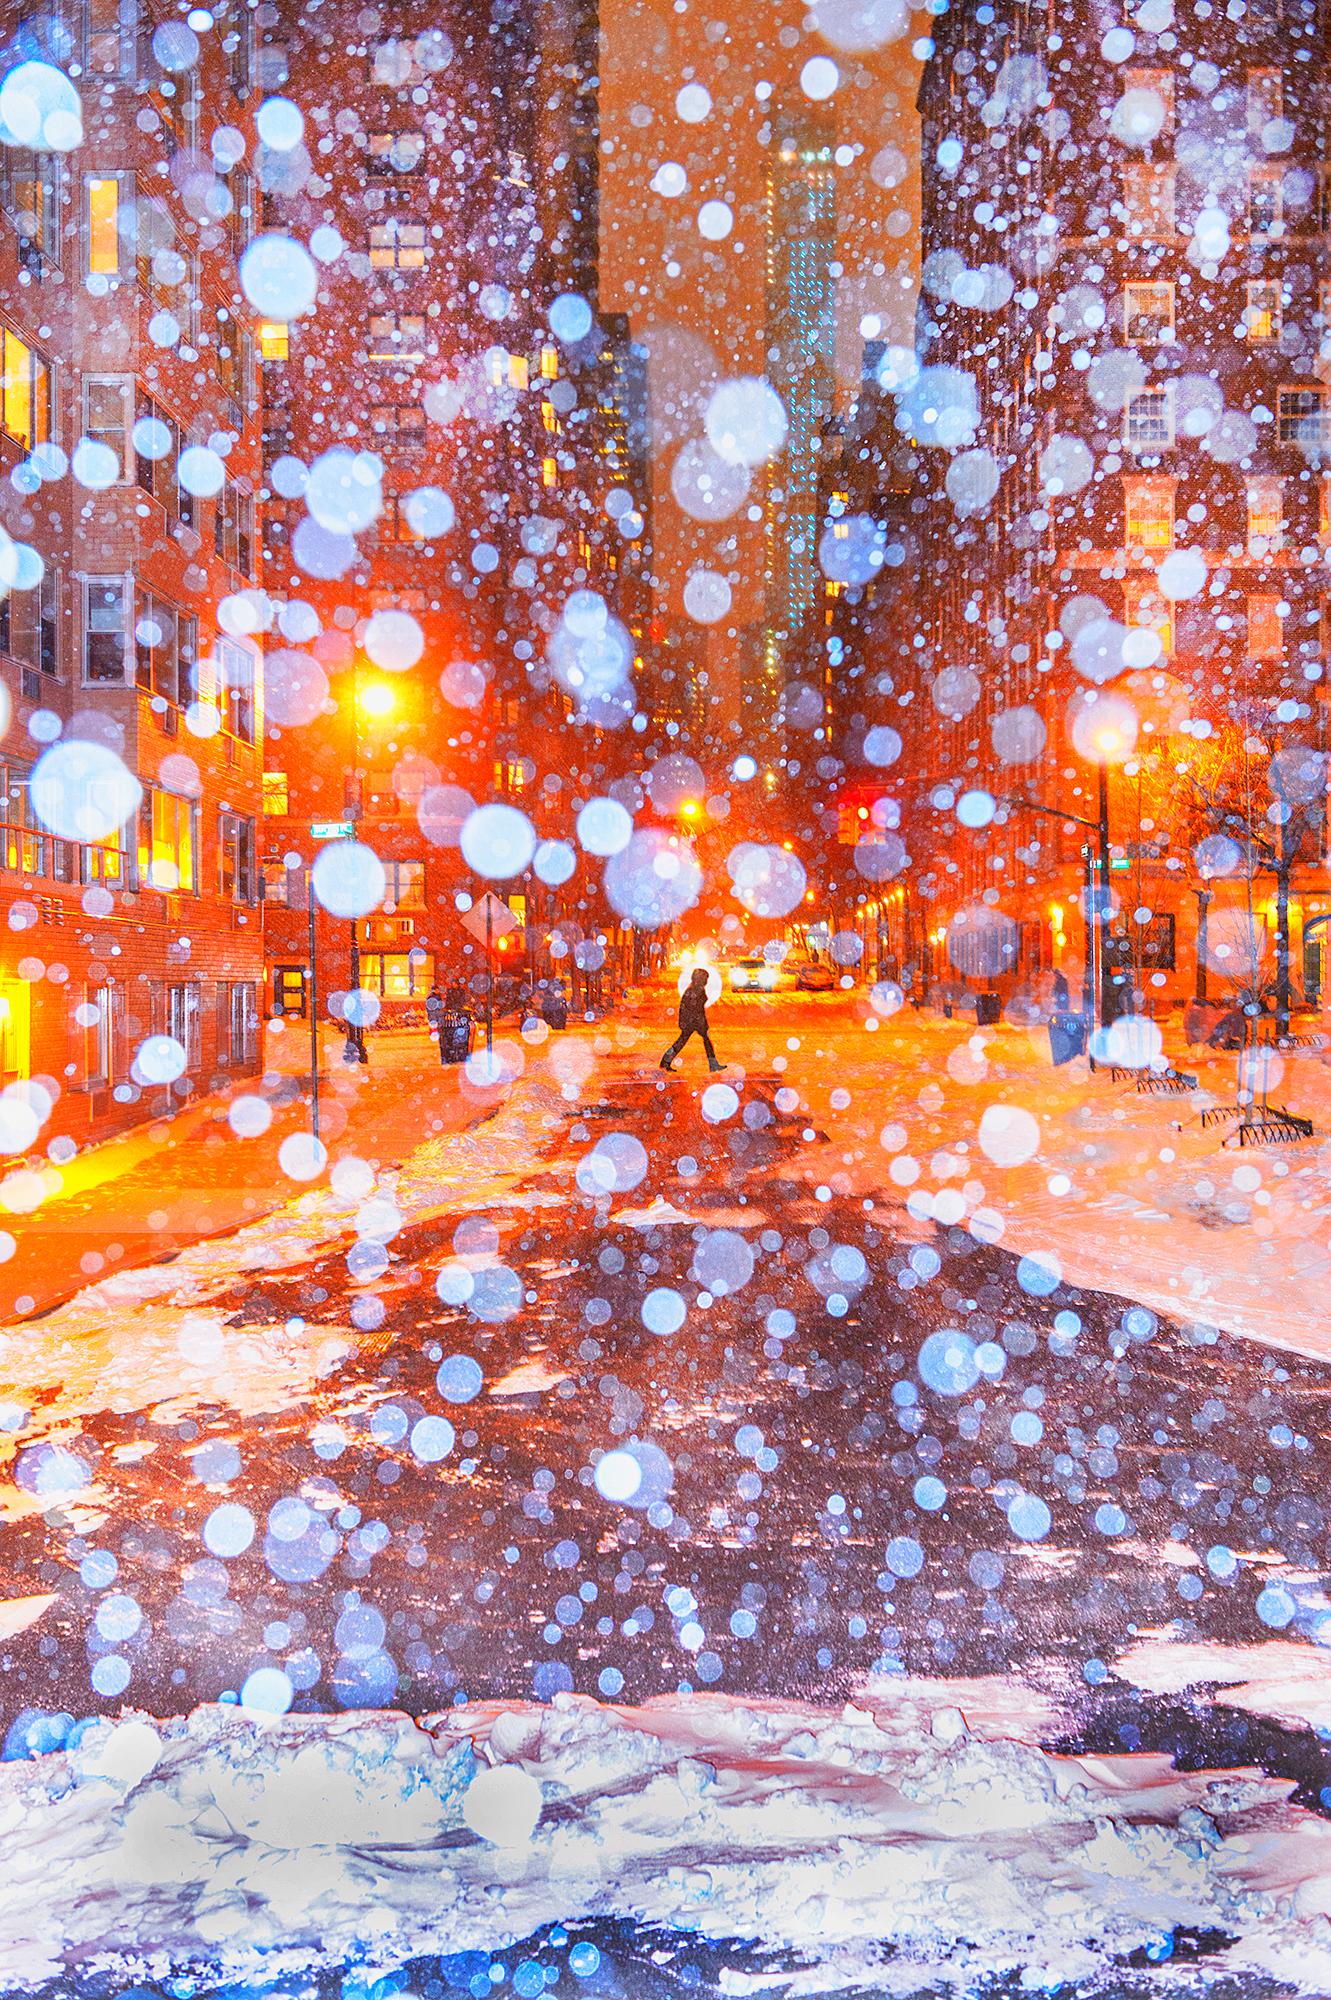 Abstract Photograph Mitchell Funk - Nuit de neige, nuit pluvieuse à Manhattan avec ciel orange